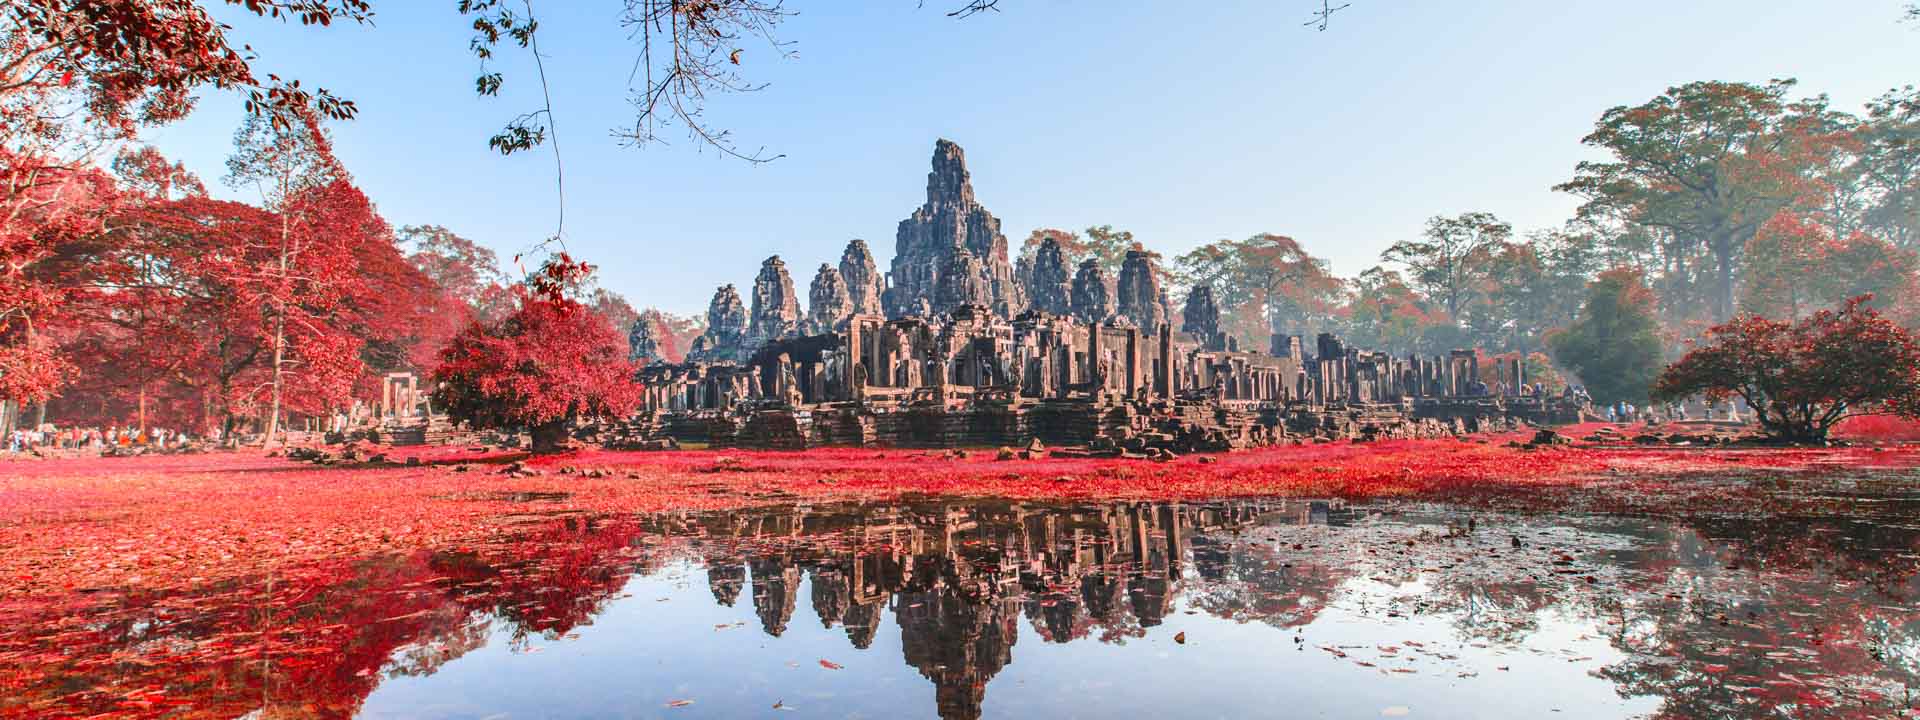 Cambodia Vietnam Tour 18 days